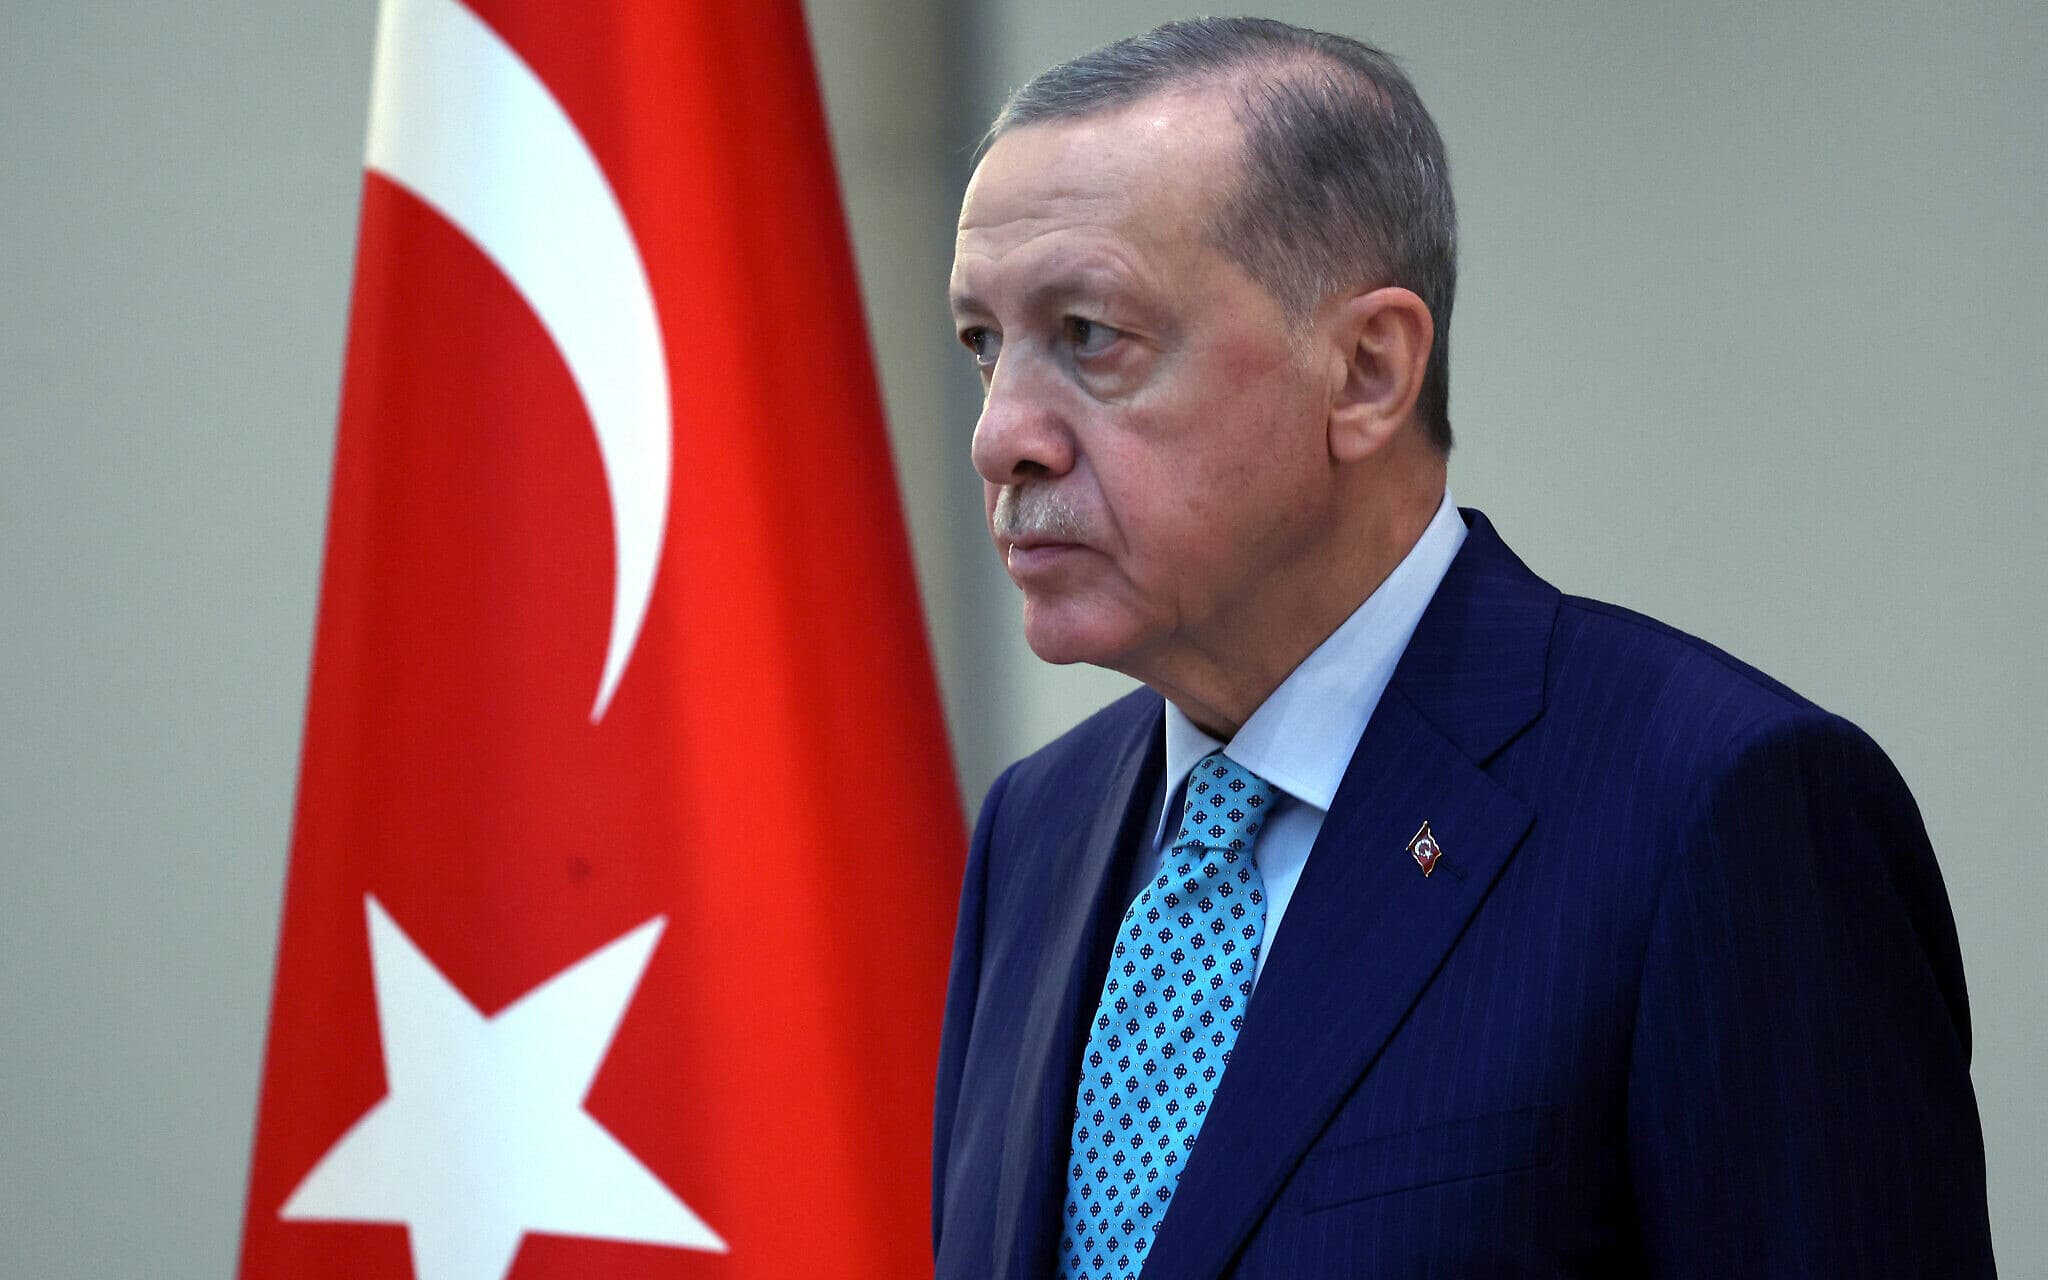 Erdogan Kritik AS Atas Pemindahan Kapal Militer ke Dekat israel